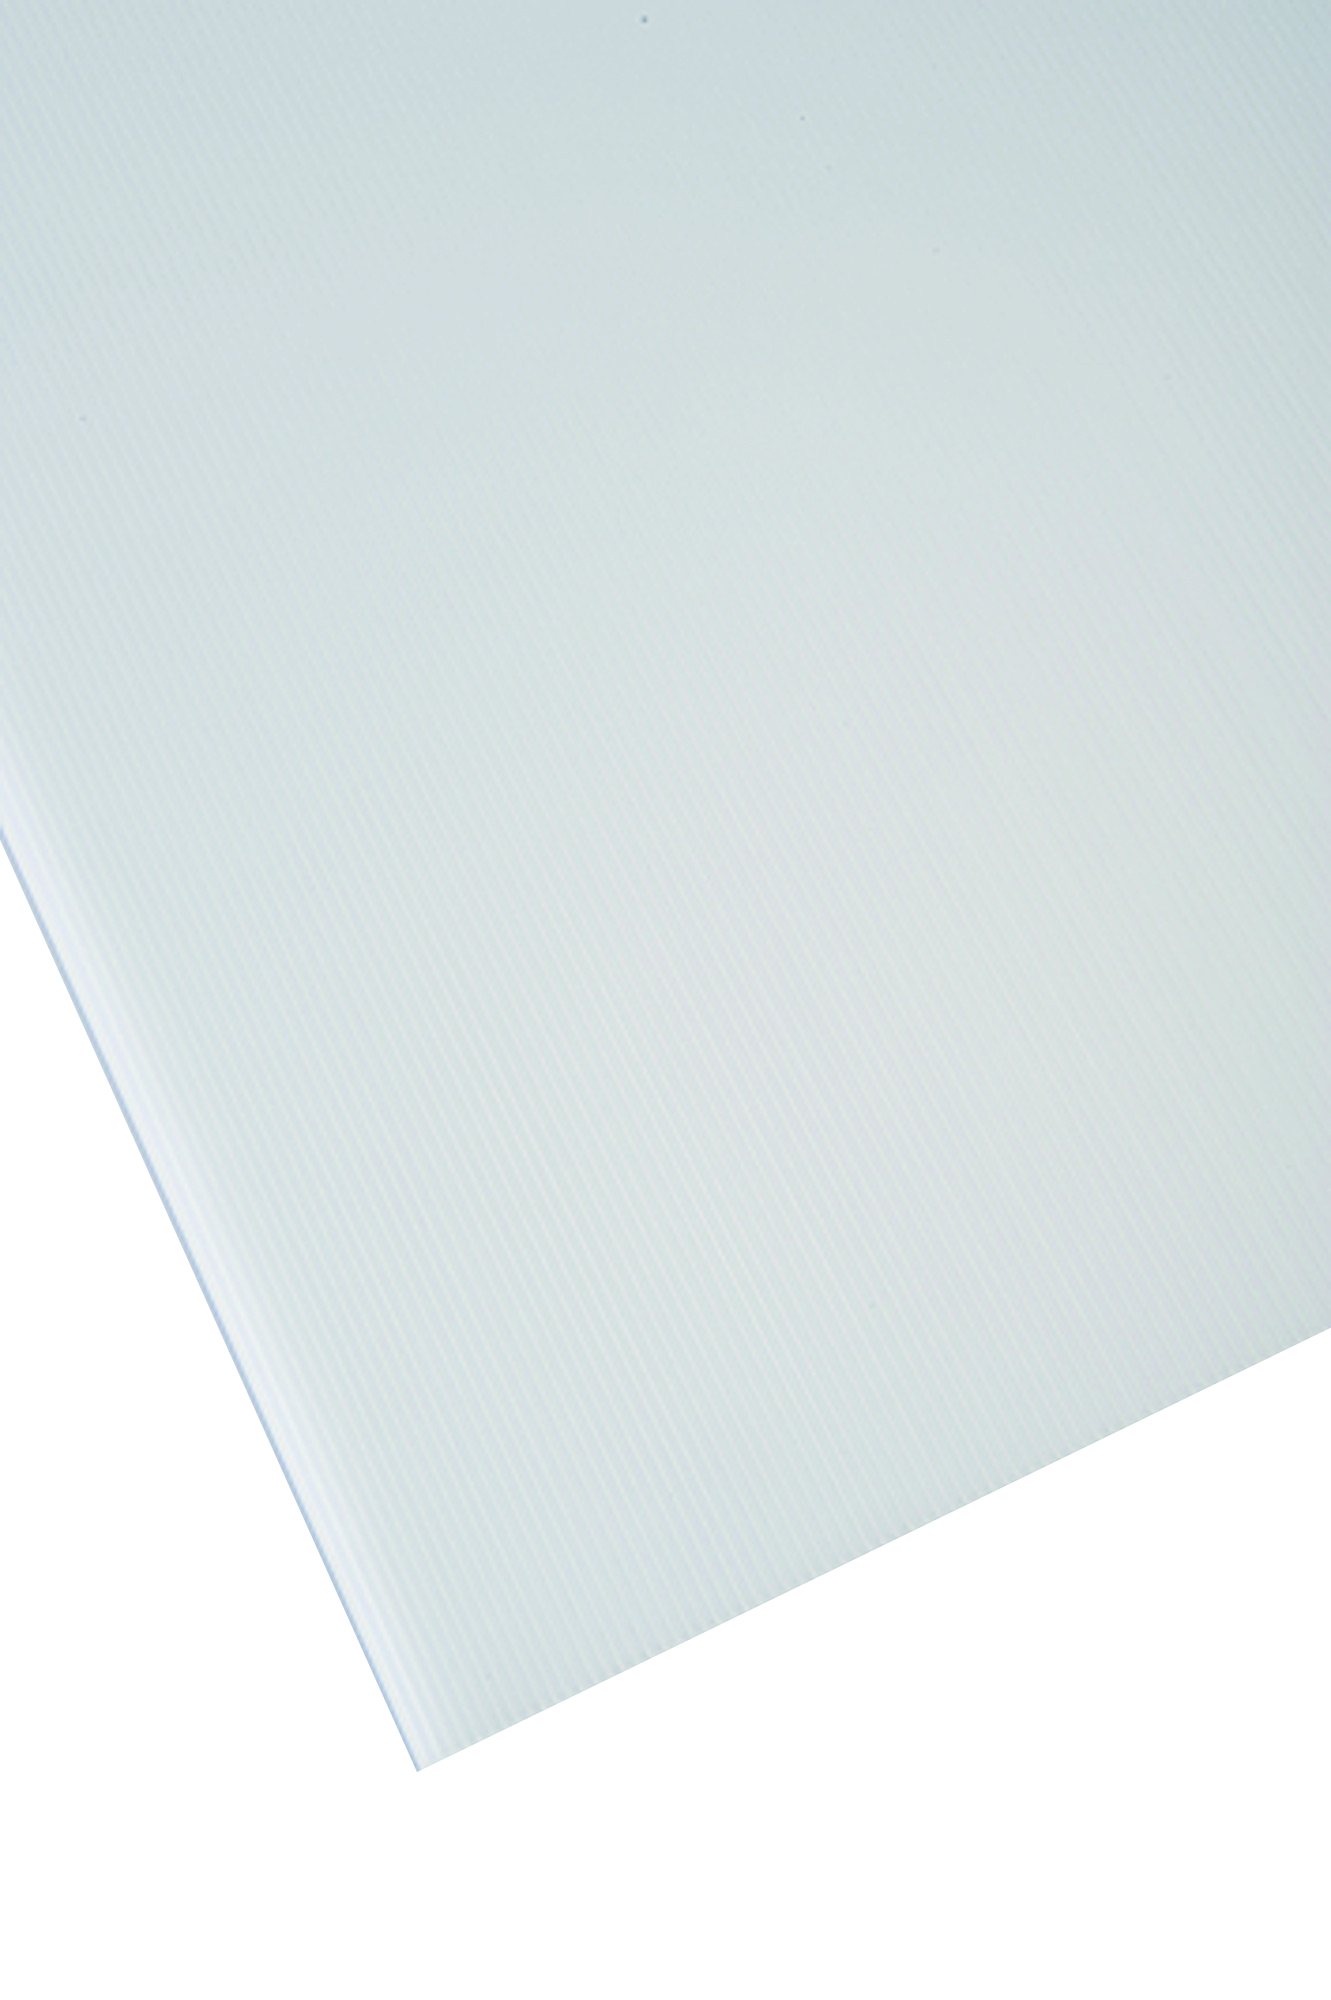 Placa de polipropileno transparente opaco de 2.5 mm de grosor y 150x50cm